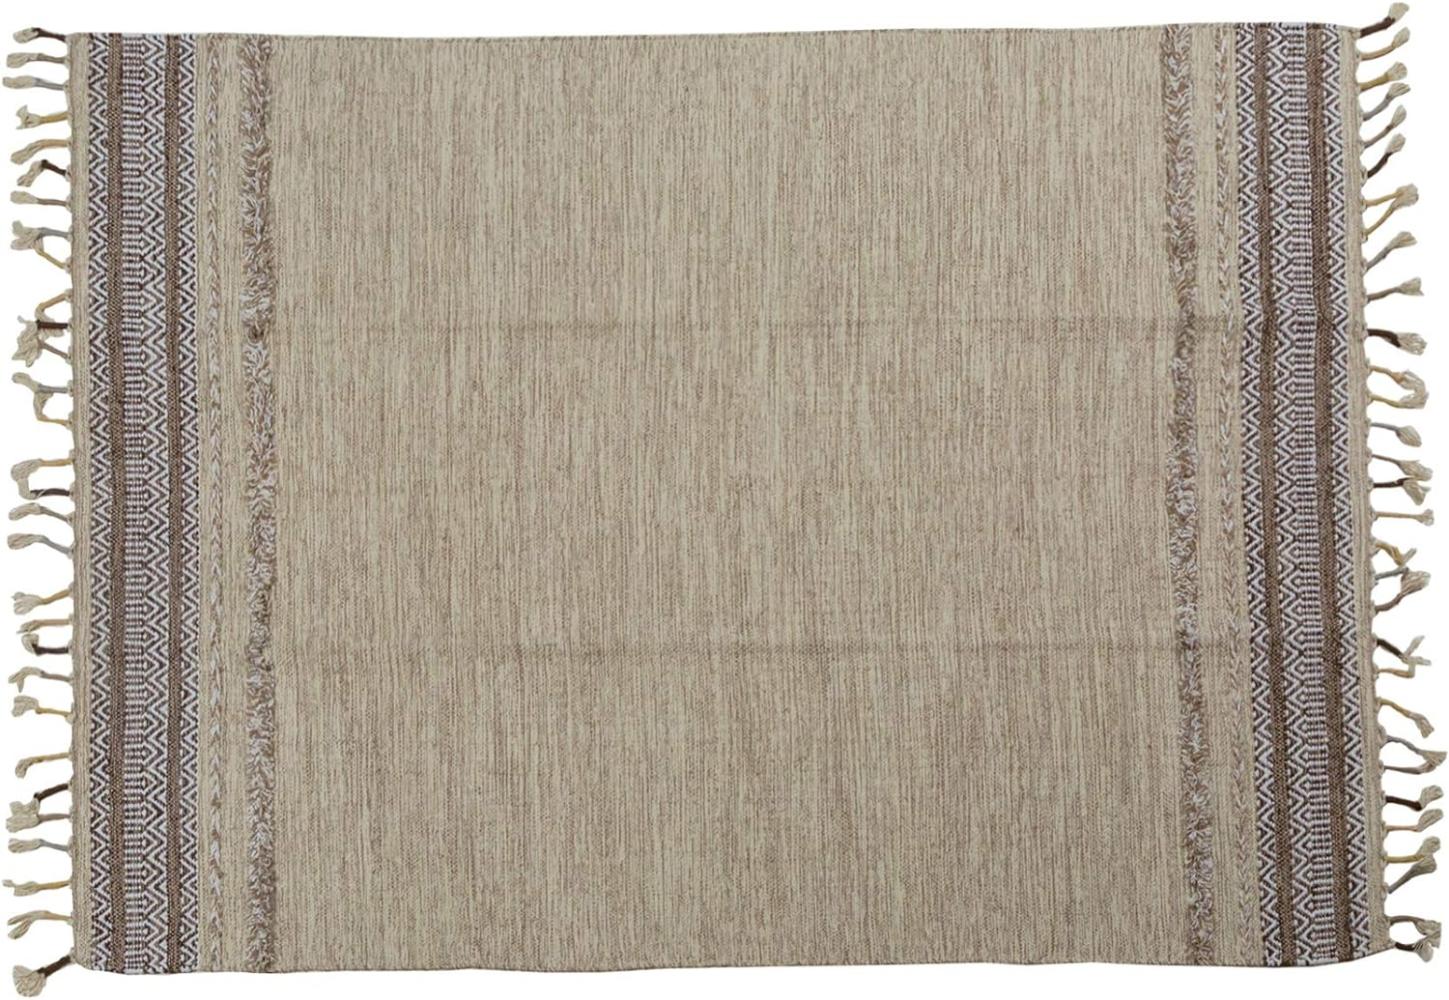 Dmora Moderner Boston-Teppich, Kelim-Stil, 100% Baumwolle, beige, 200x140cm Bild 1